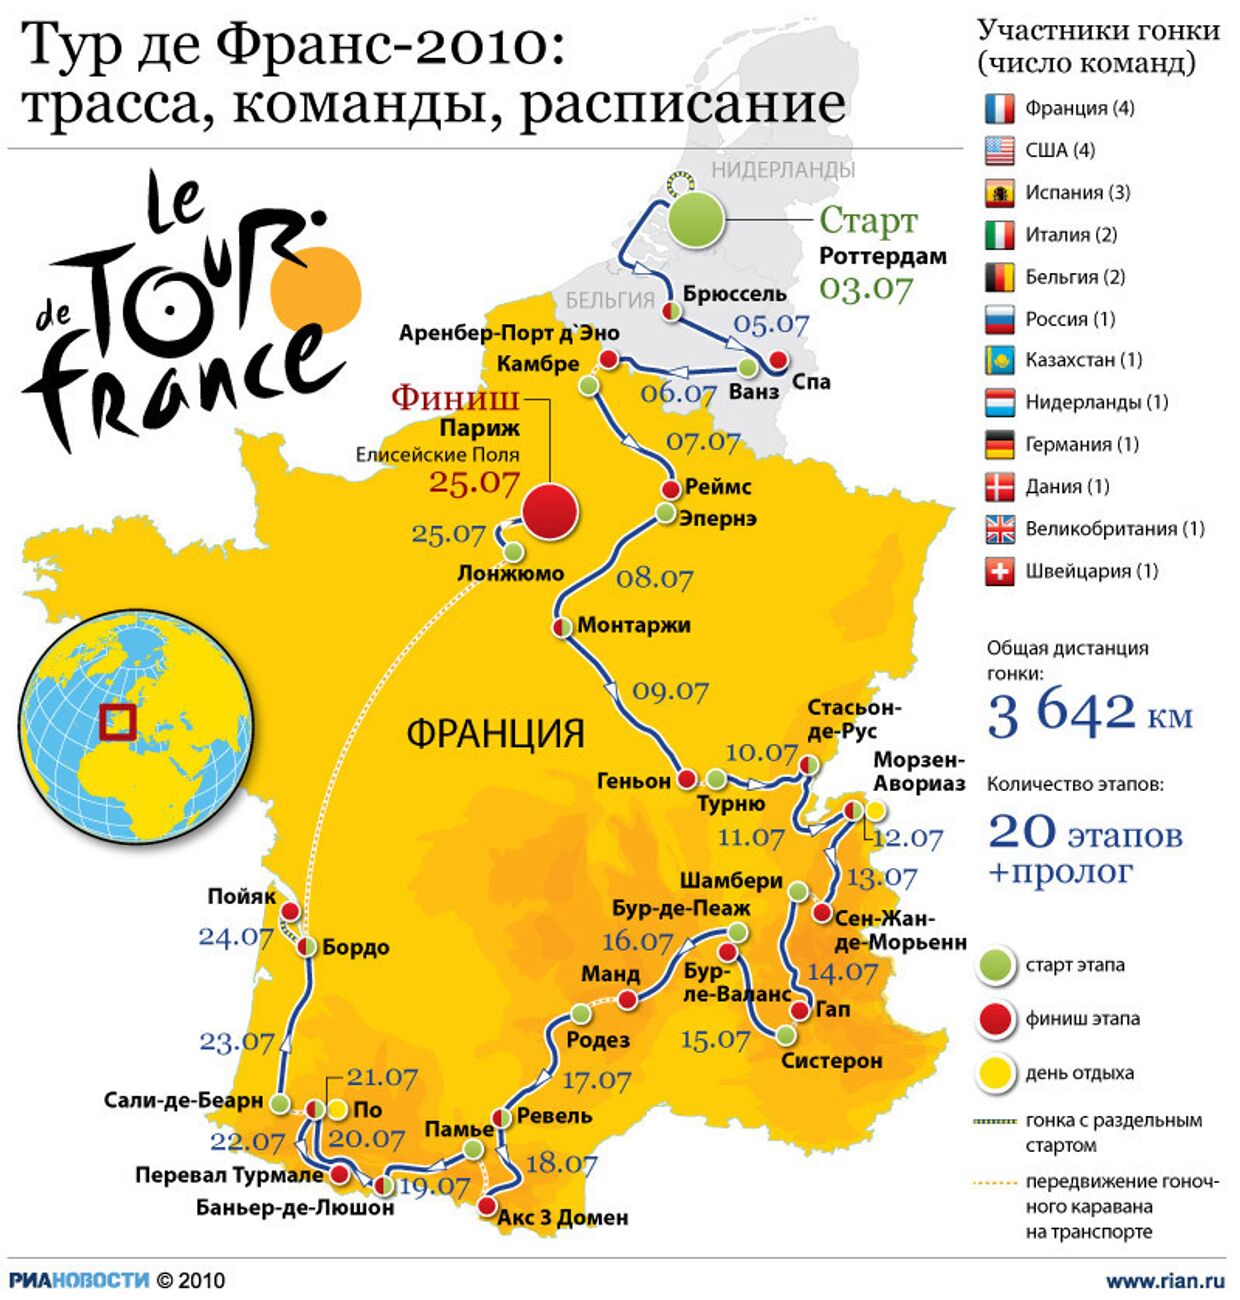 Тур де Франс-2010:трасса, команды, расписание